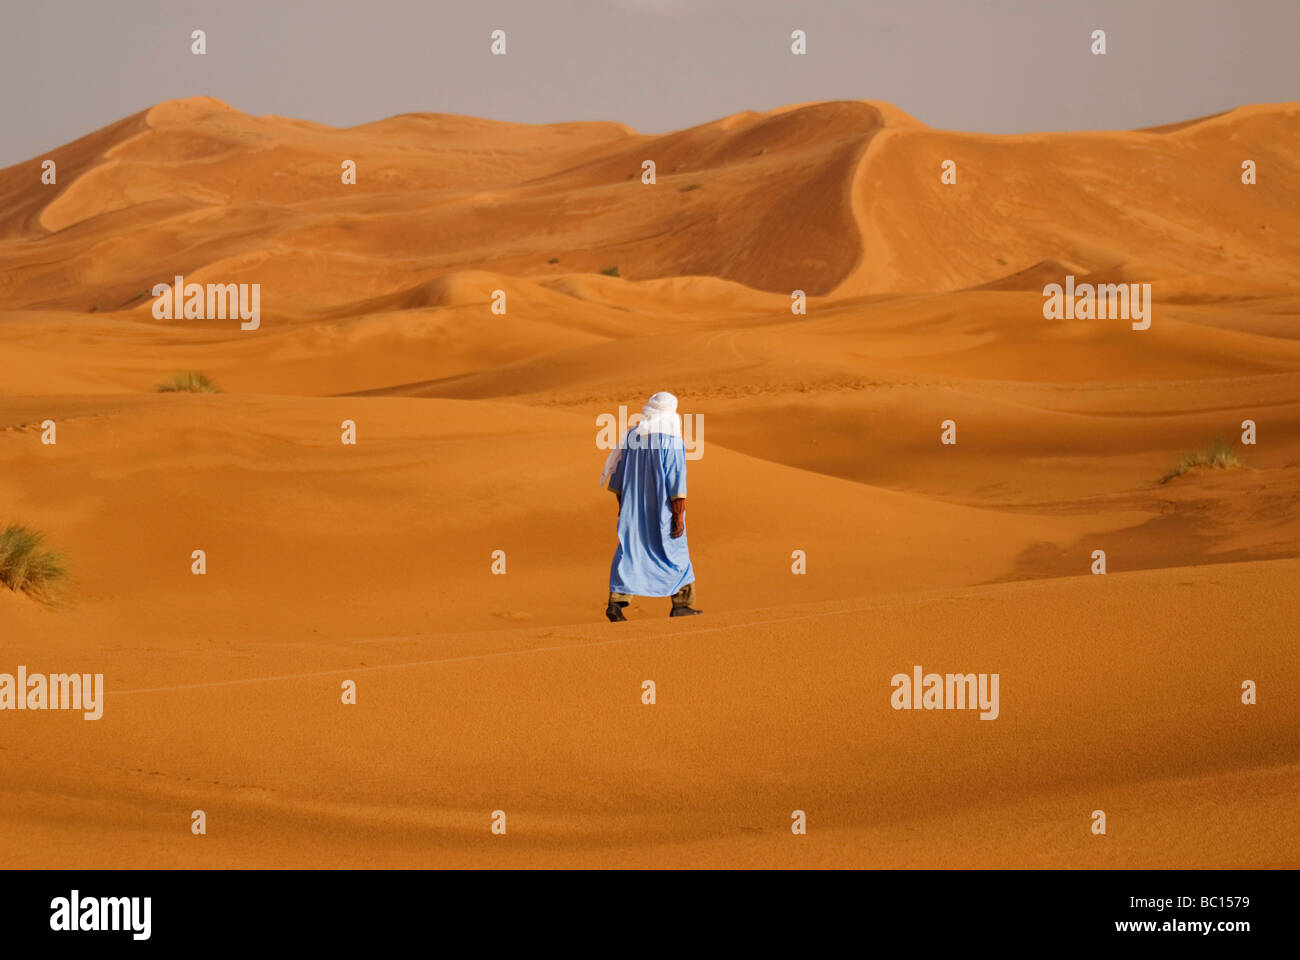 Un homme en costume traditionnel berbère promenades à travers les dunes de l'Erg Chebi désert près de Merzouga Maroc Afrique du Nord Banque D'Images